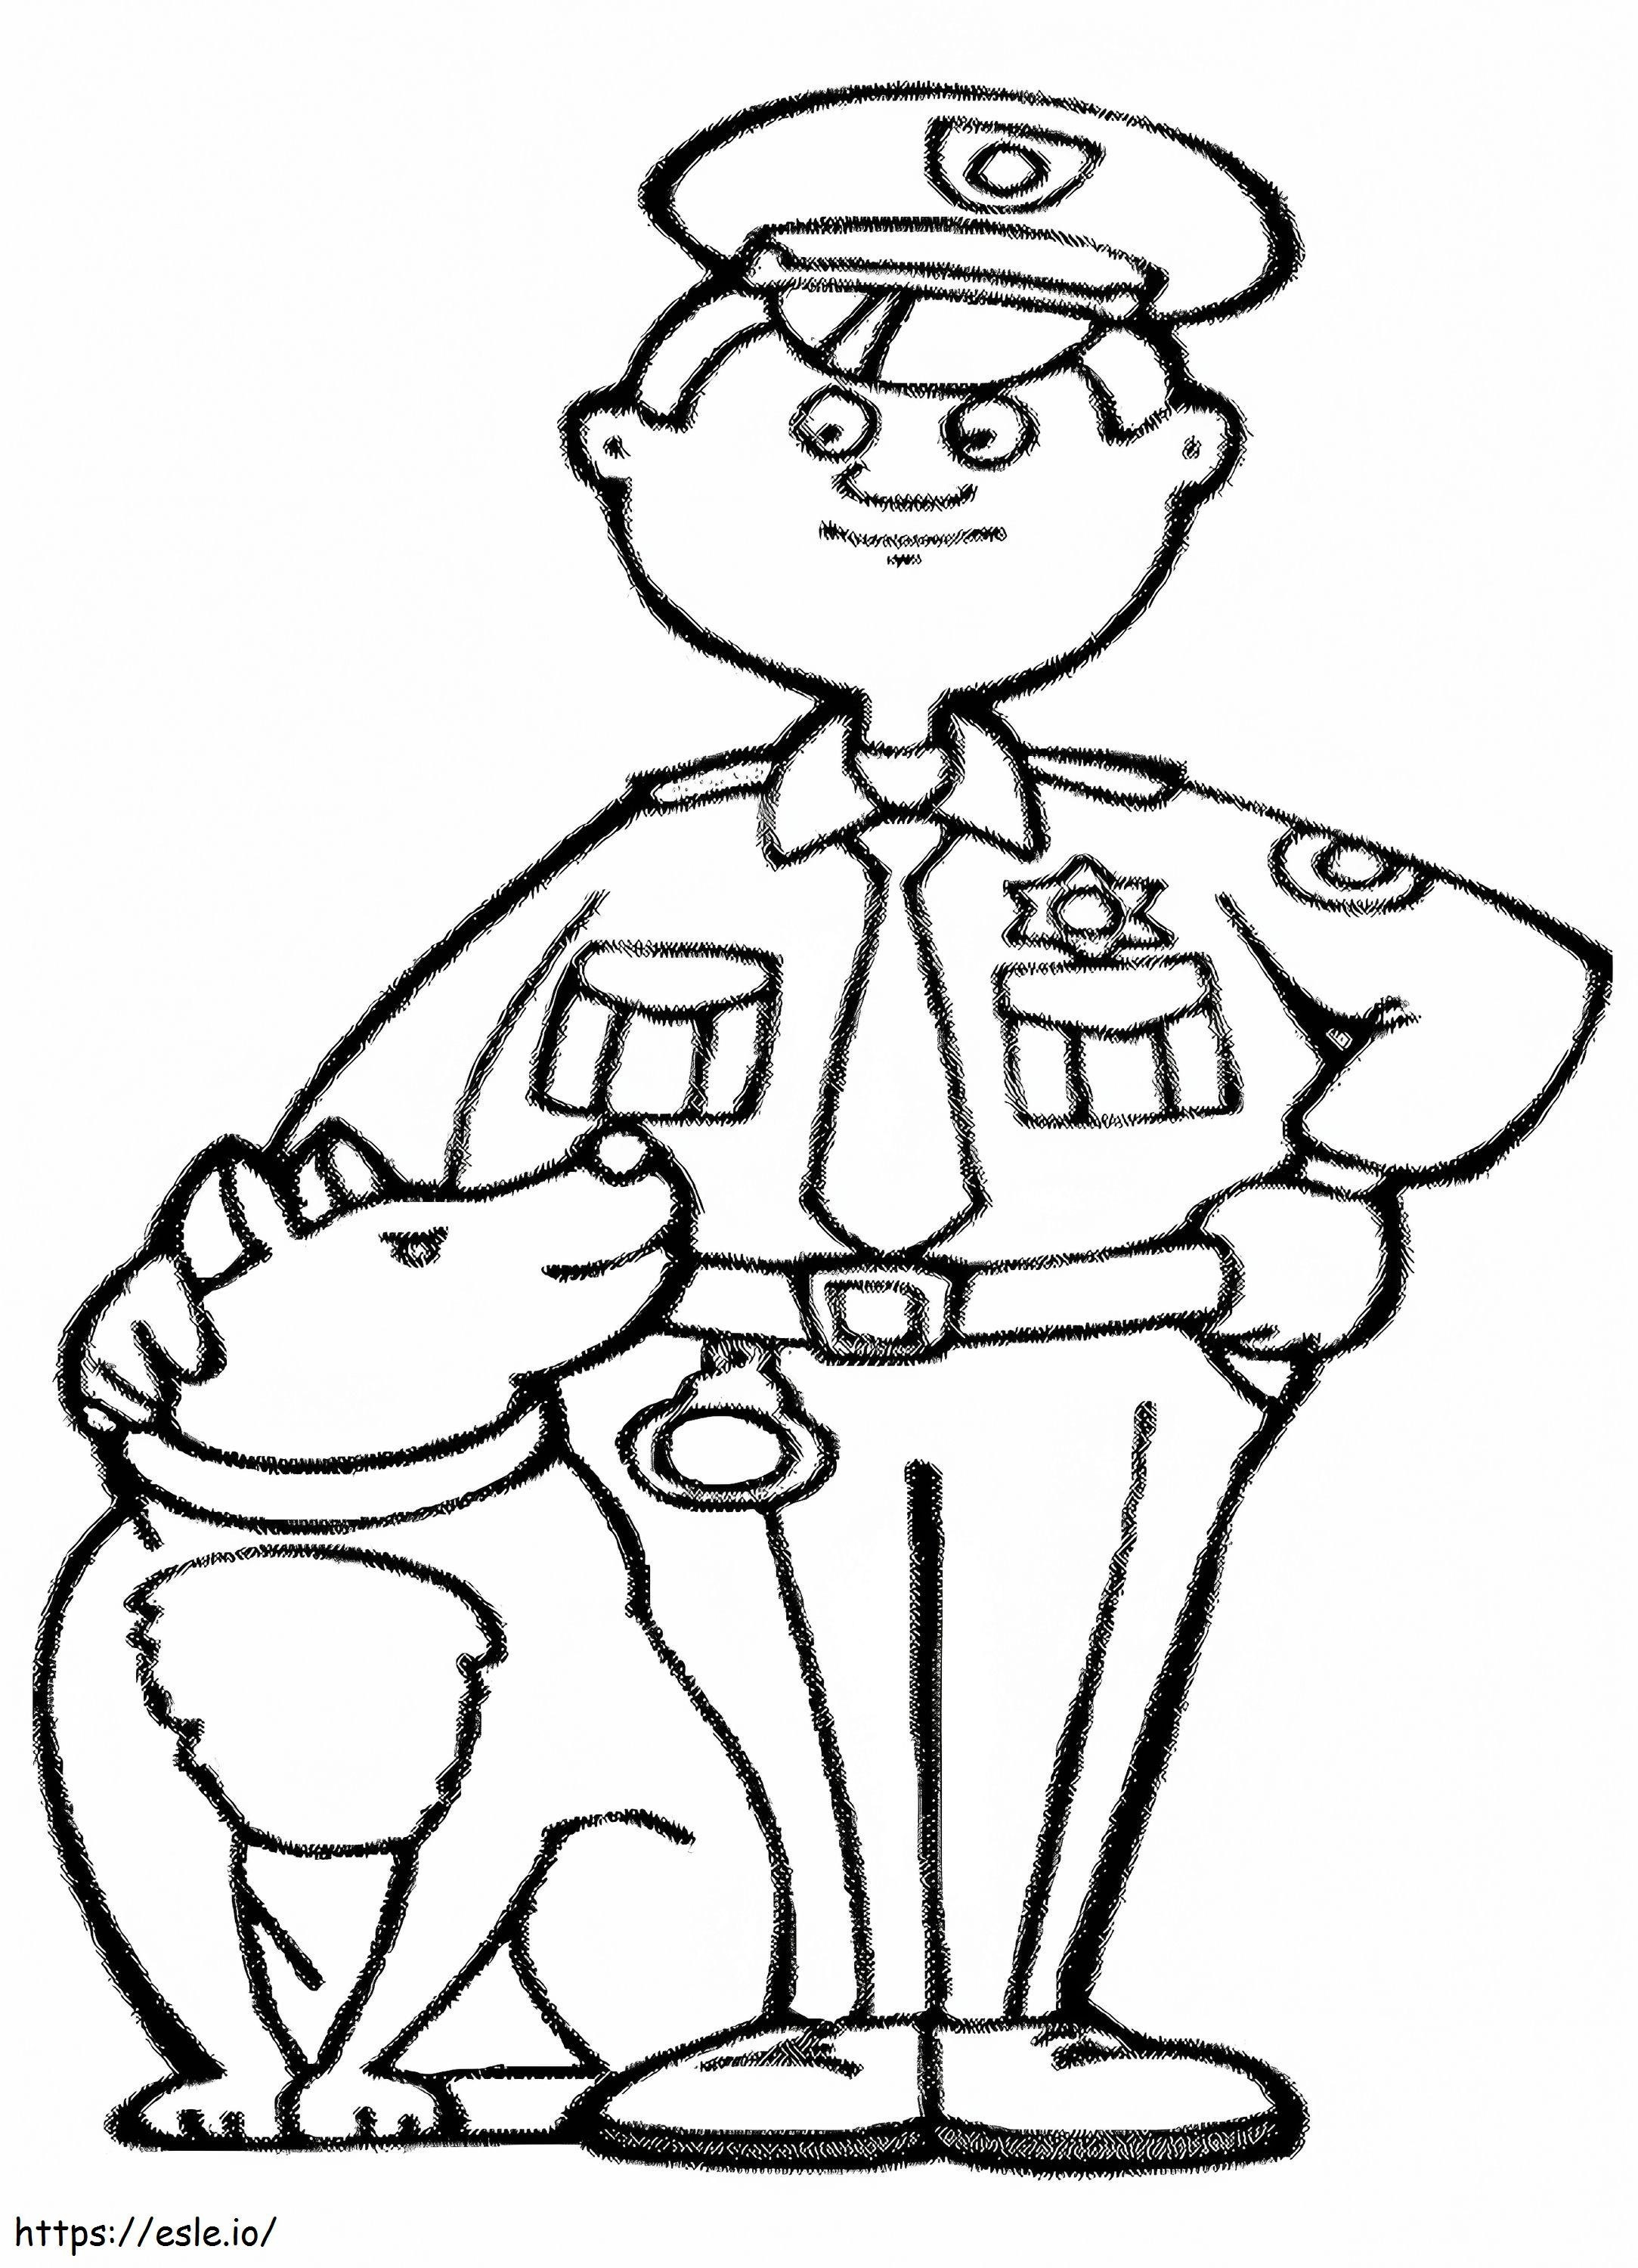 Poliția și câinele de colorat